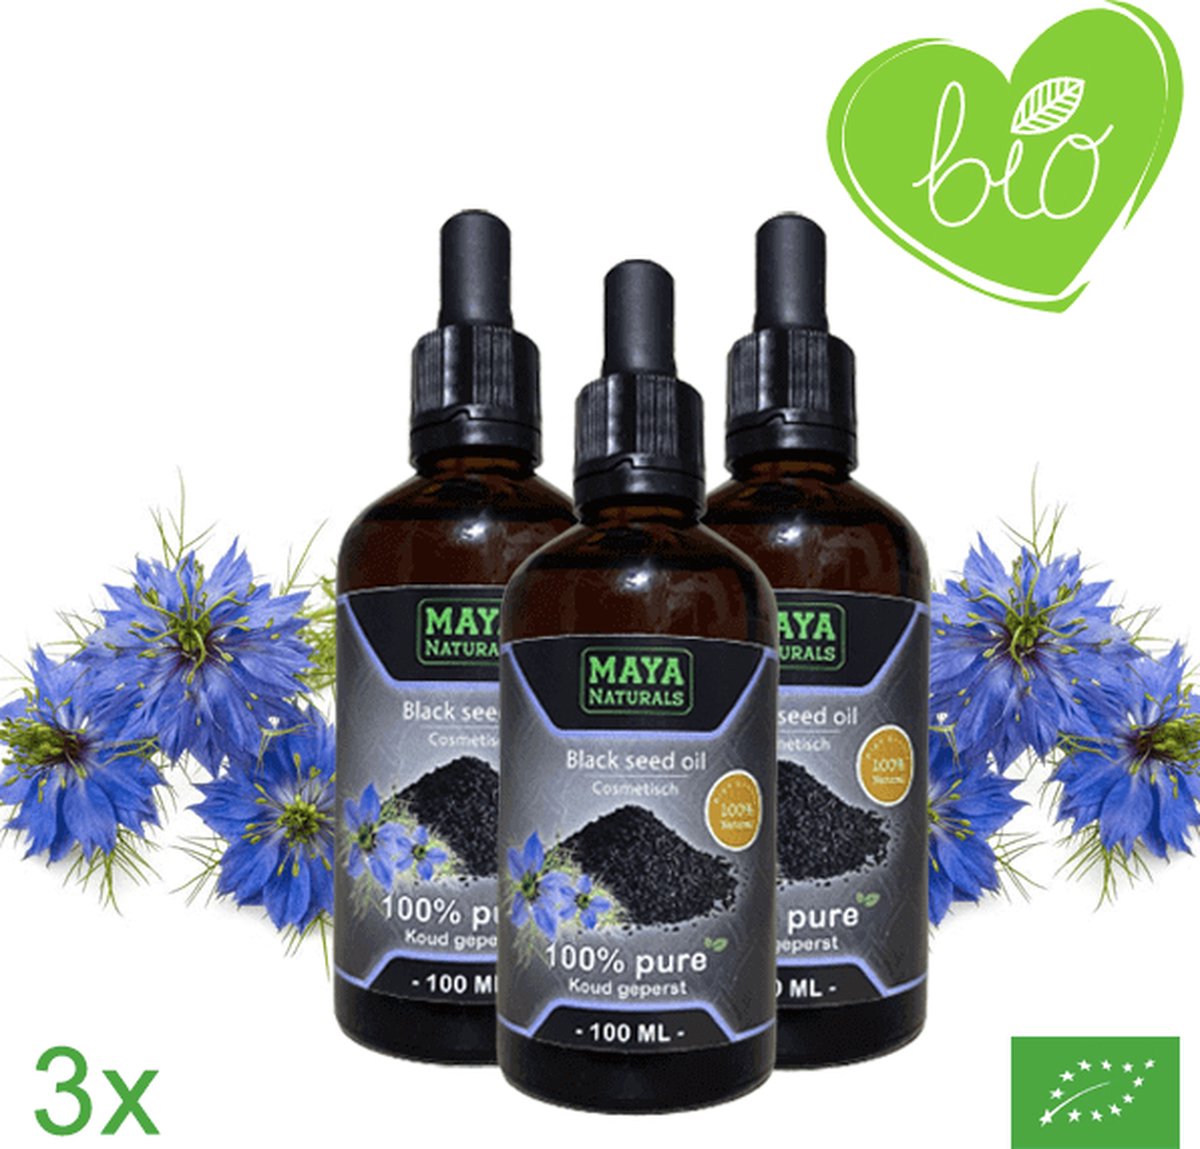 Natuurlijke Black Seed Oil 3X 100ml | 100% Puur & Onbewerkt EU Bio keurmerk | Zwartzaadolie | Zwarte Zaad Olie | Zwarte Komijnolie | Nigella Sativa Olie